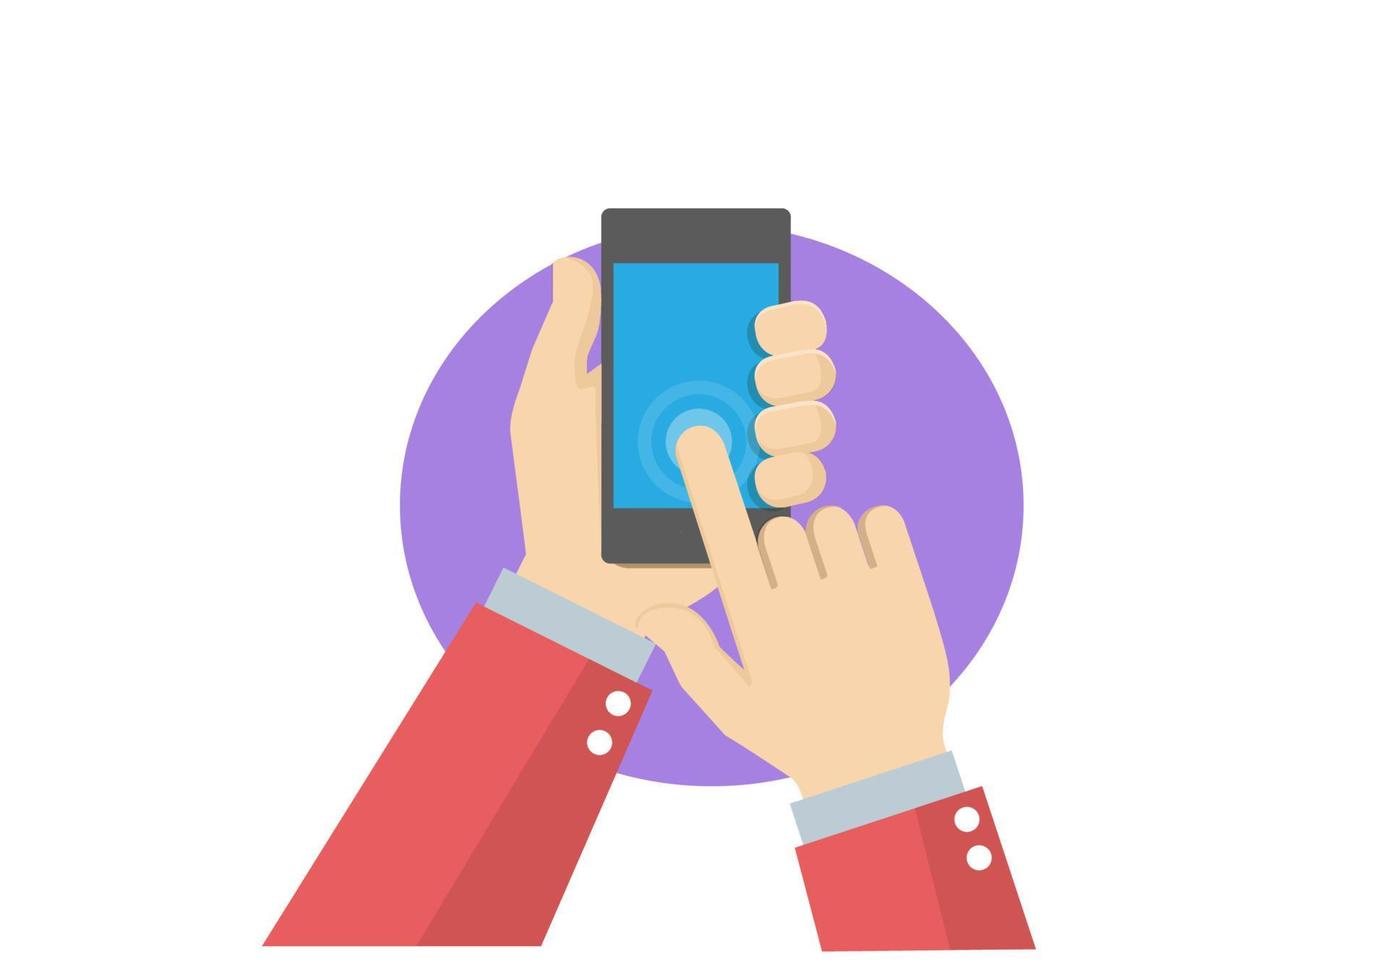 segure um telefone com um dedo de tela azul em branco pressione, toque, comande ideias sobre como comprar comida, roupas, entrega, pedidos de hotéis, mensagens on-line. vetor de ilustração de desenhos animados de estilo simples